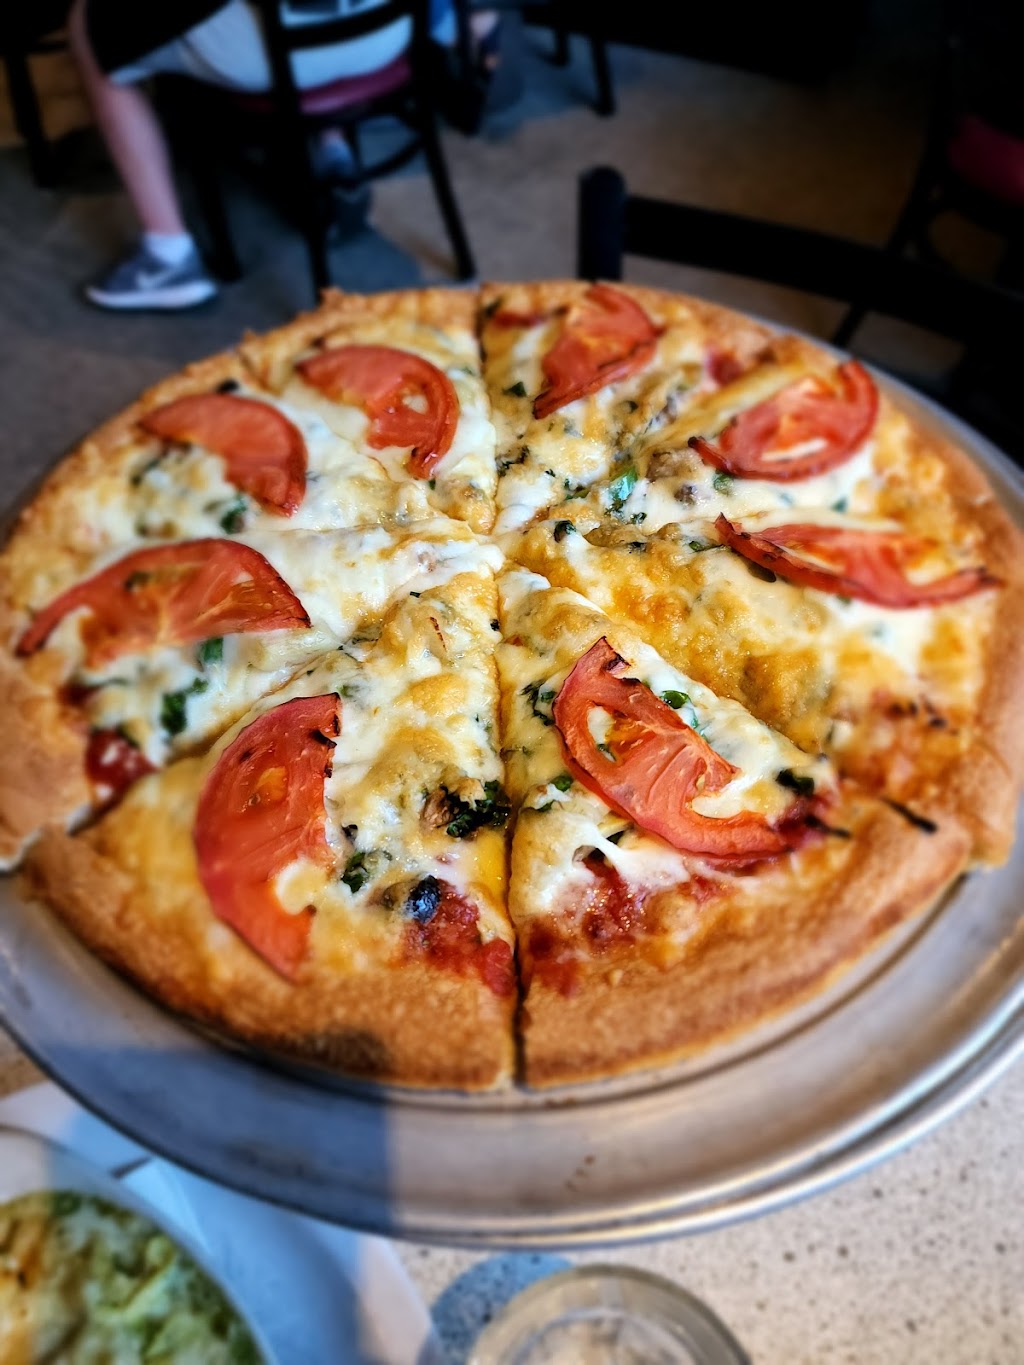 Santorini Pizza & Pasta | 11001 35th Ave NE, Seattle, WA 98125 | Phone: (206) 440-8499